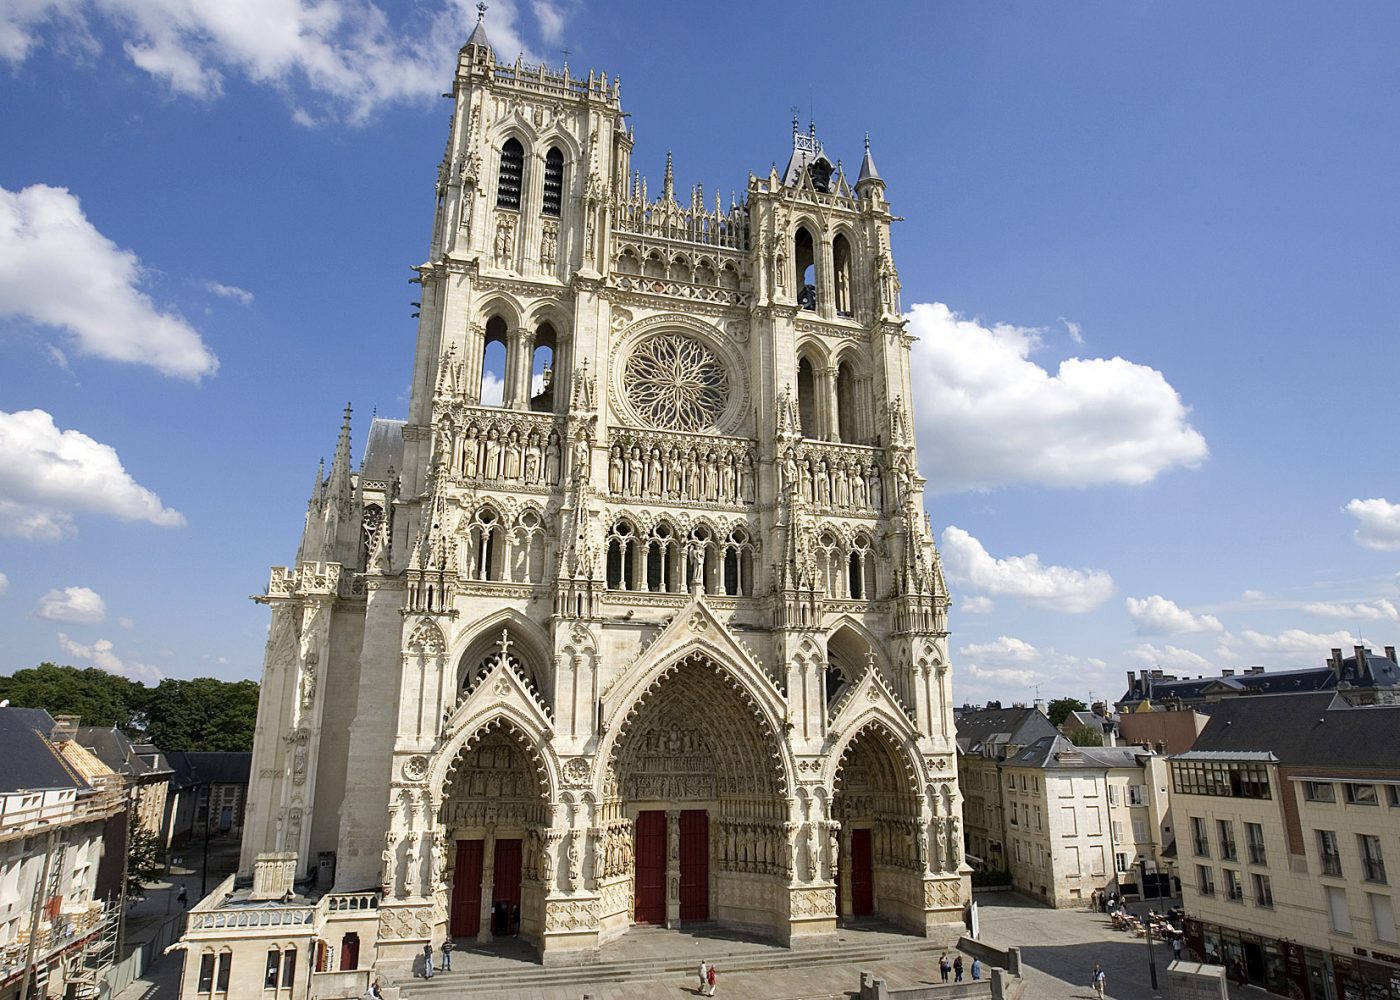 Amiens, la ville s’enorgueillit d’un des plus beaux fleurons de l’art gothique.
© Amiens Métropole